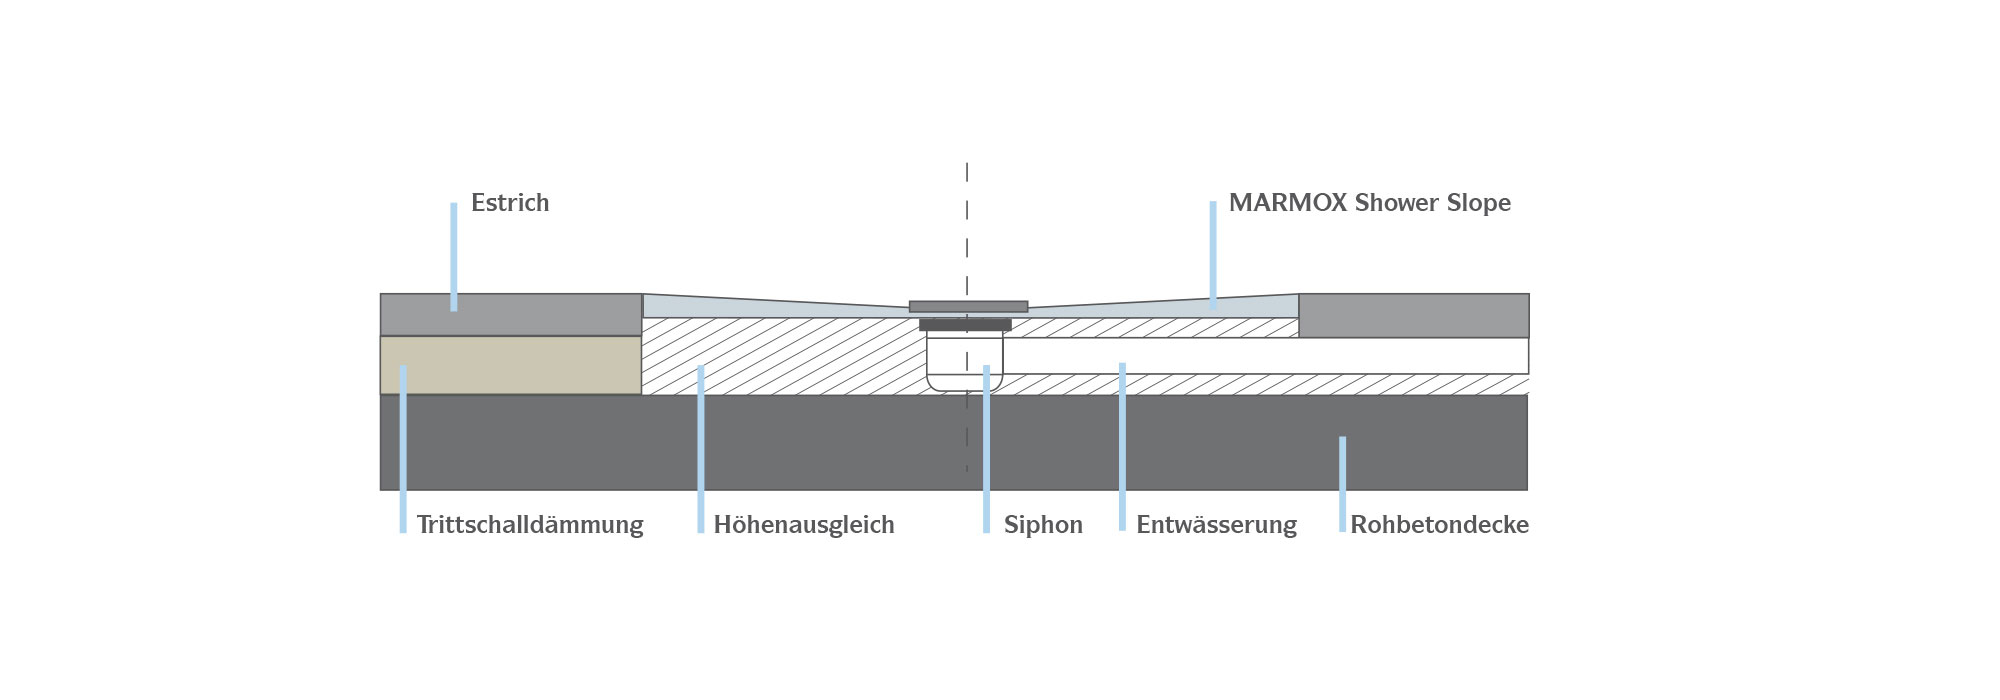 MARMOX Shower Slope - Montage auf Betonböden Details